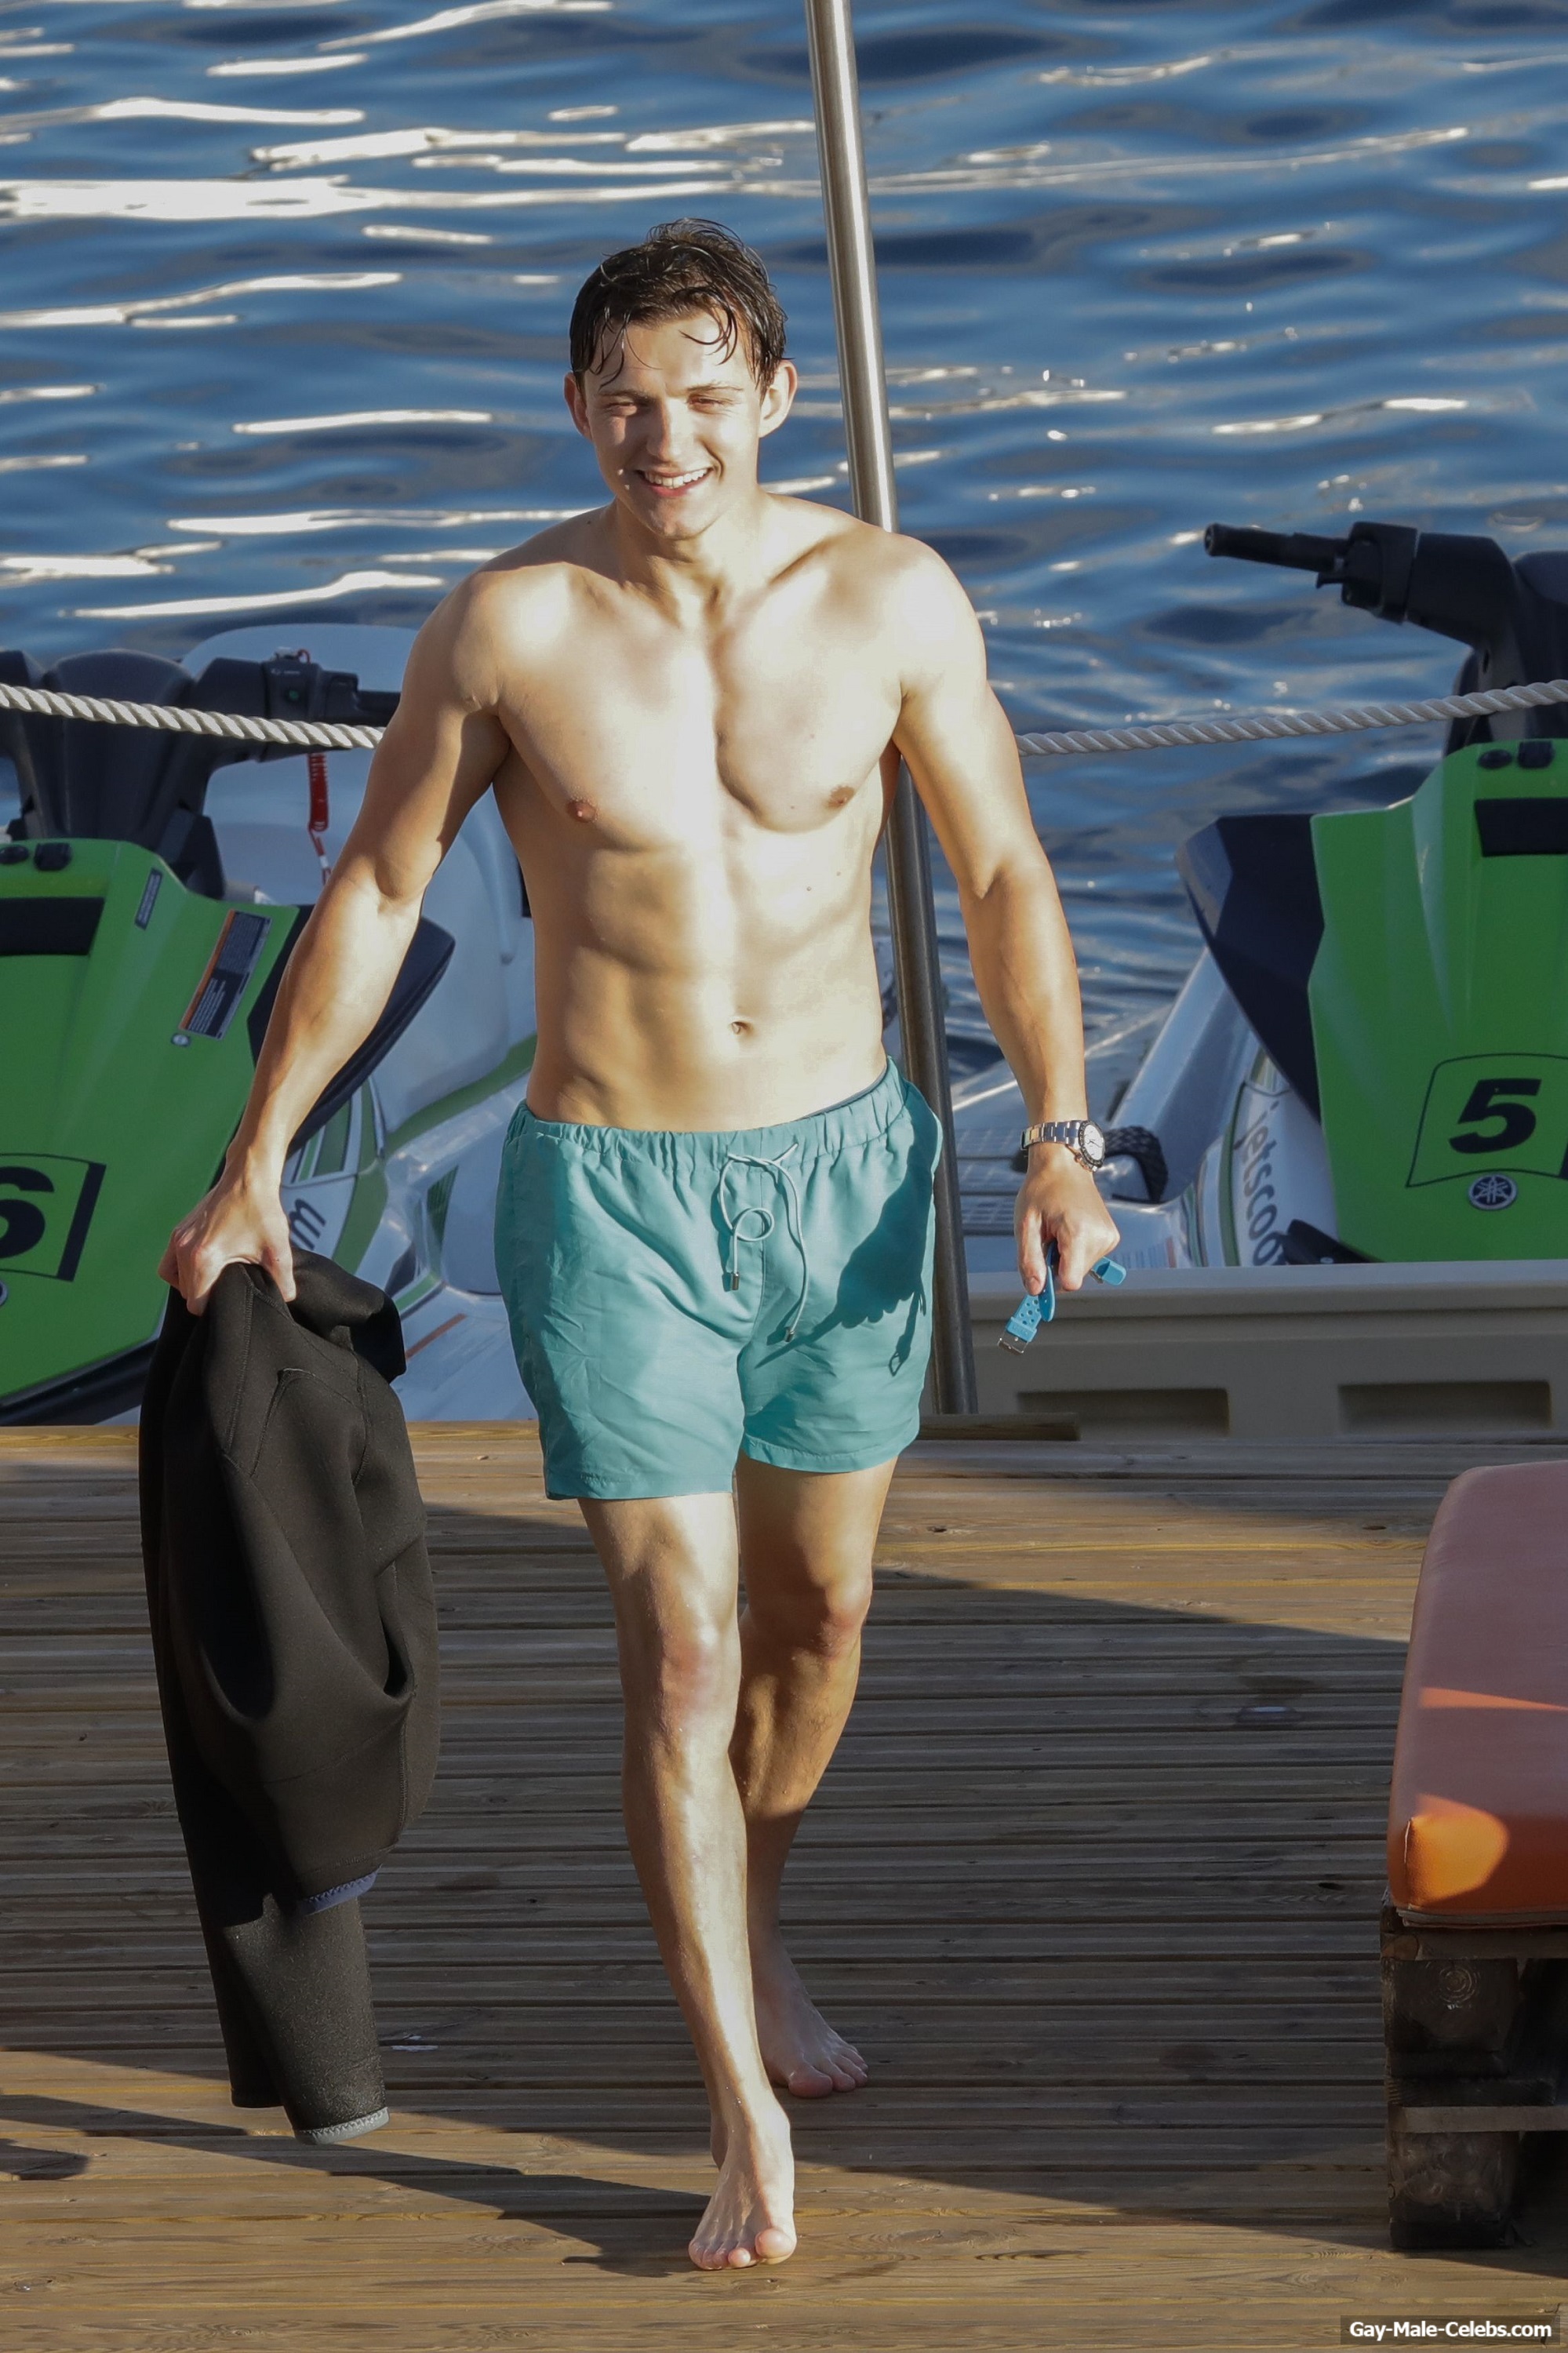 Tom Holland Looks Hot Shirtless During Jet Ski